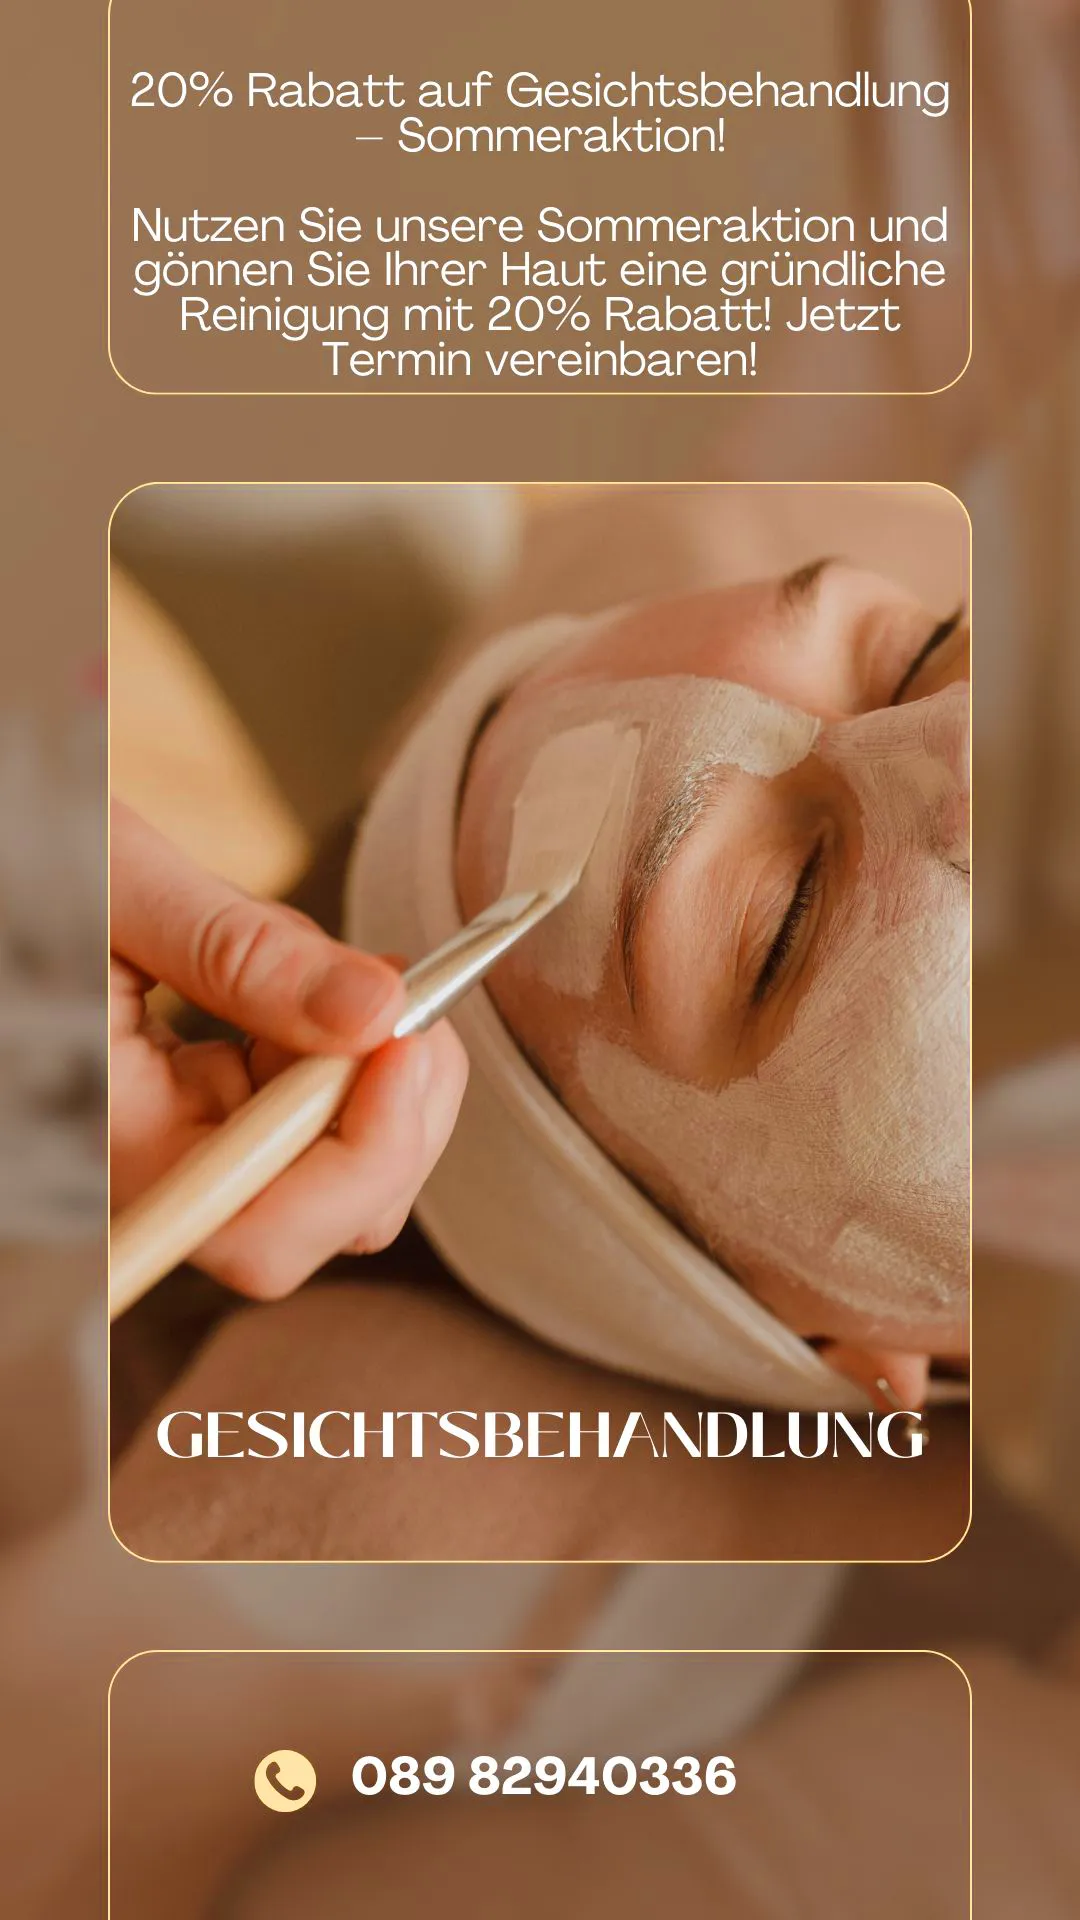 Sommeraktion von Beauty Lounge Kosmetiksalon in München-Pasing. 20 % Rabatt auf Gesichtsbehandlung